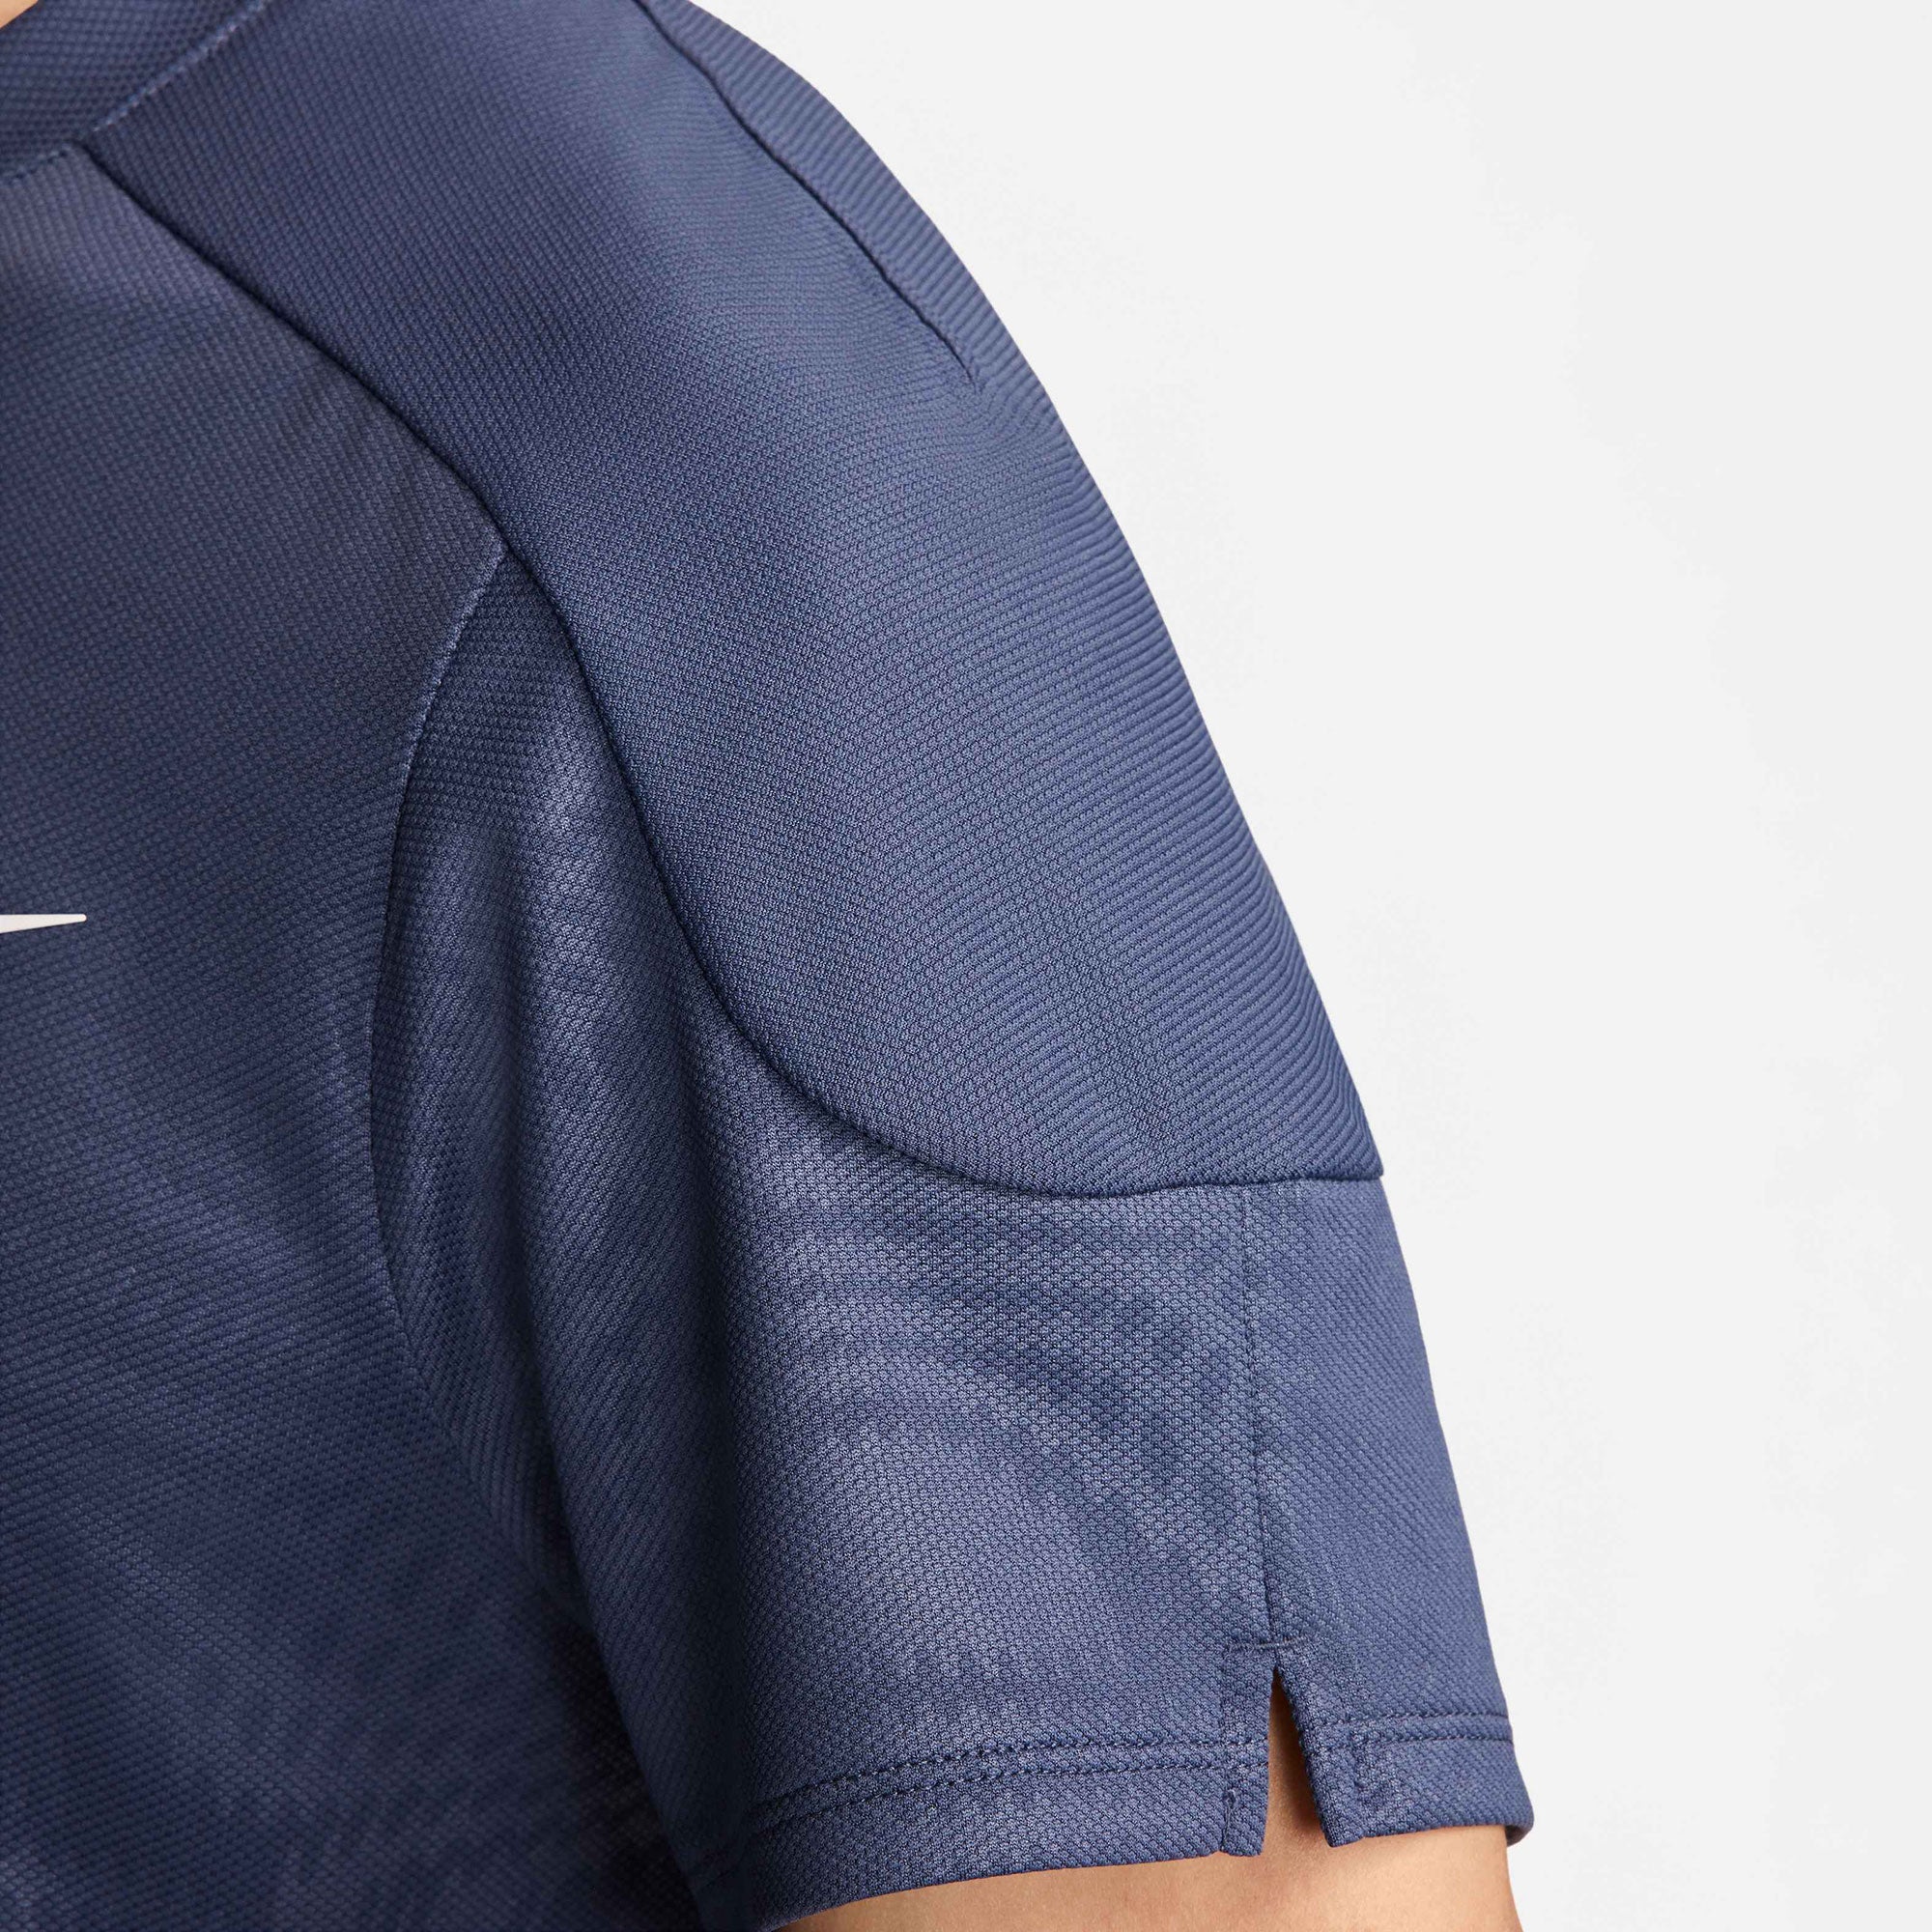 NikeCourt Slam Paris Men's Dri-FIT Tennis Shirt - Blue (5)